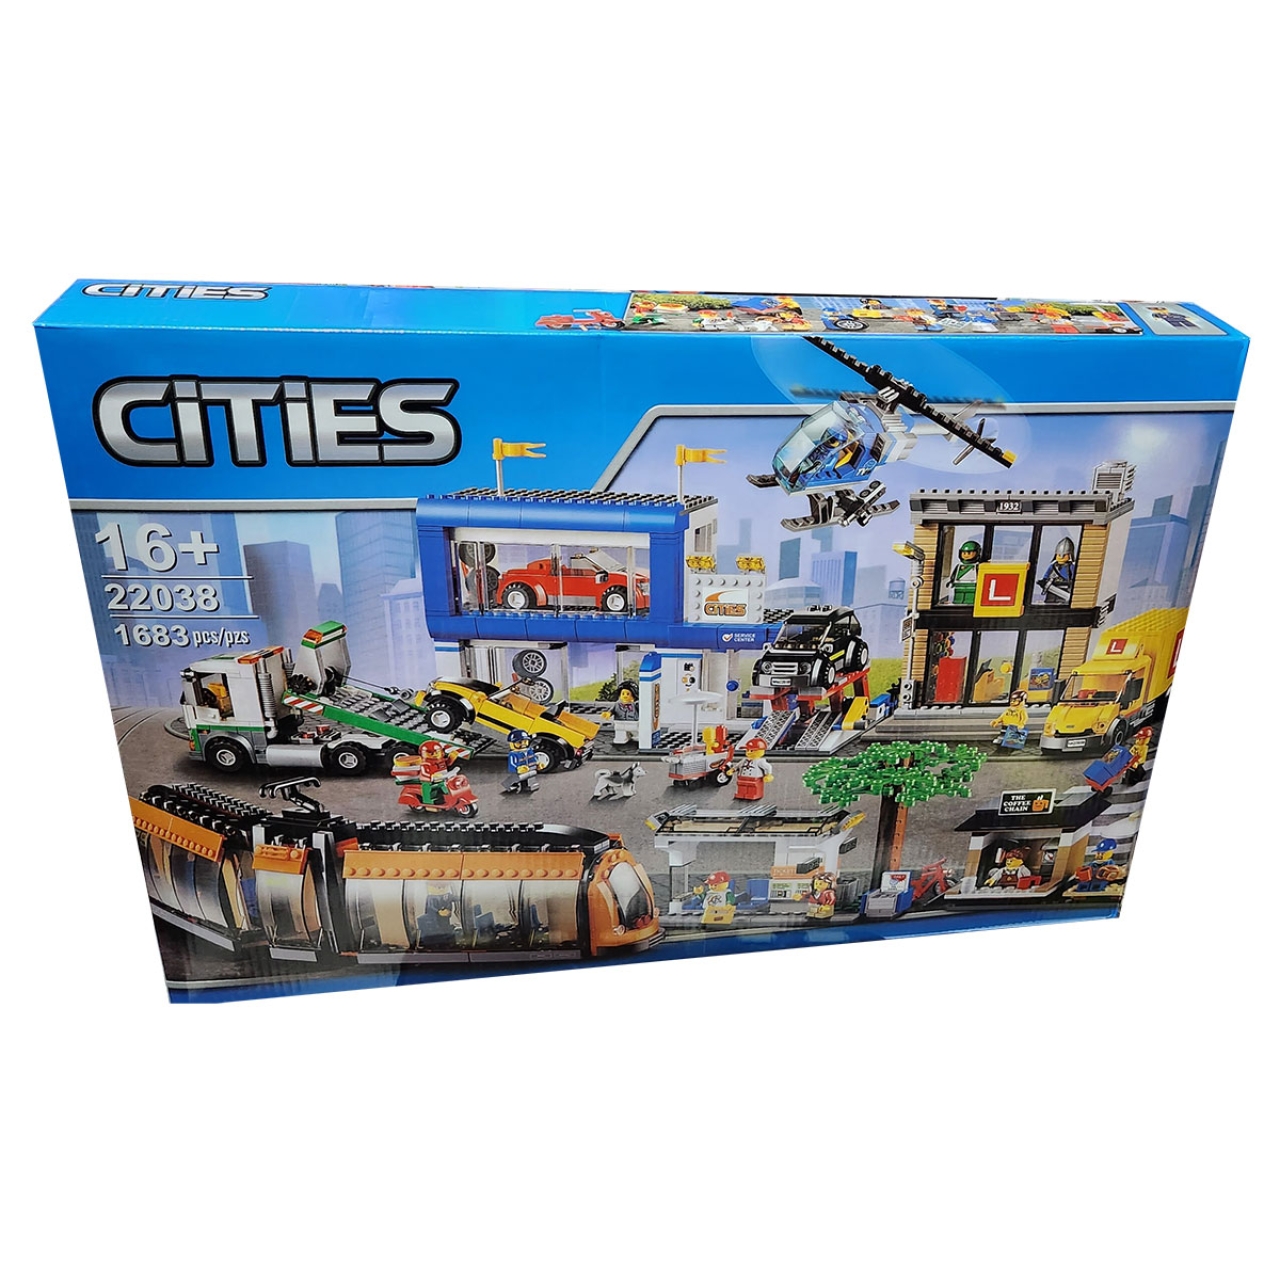 ساختنی مدل Cities کد 22038